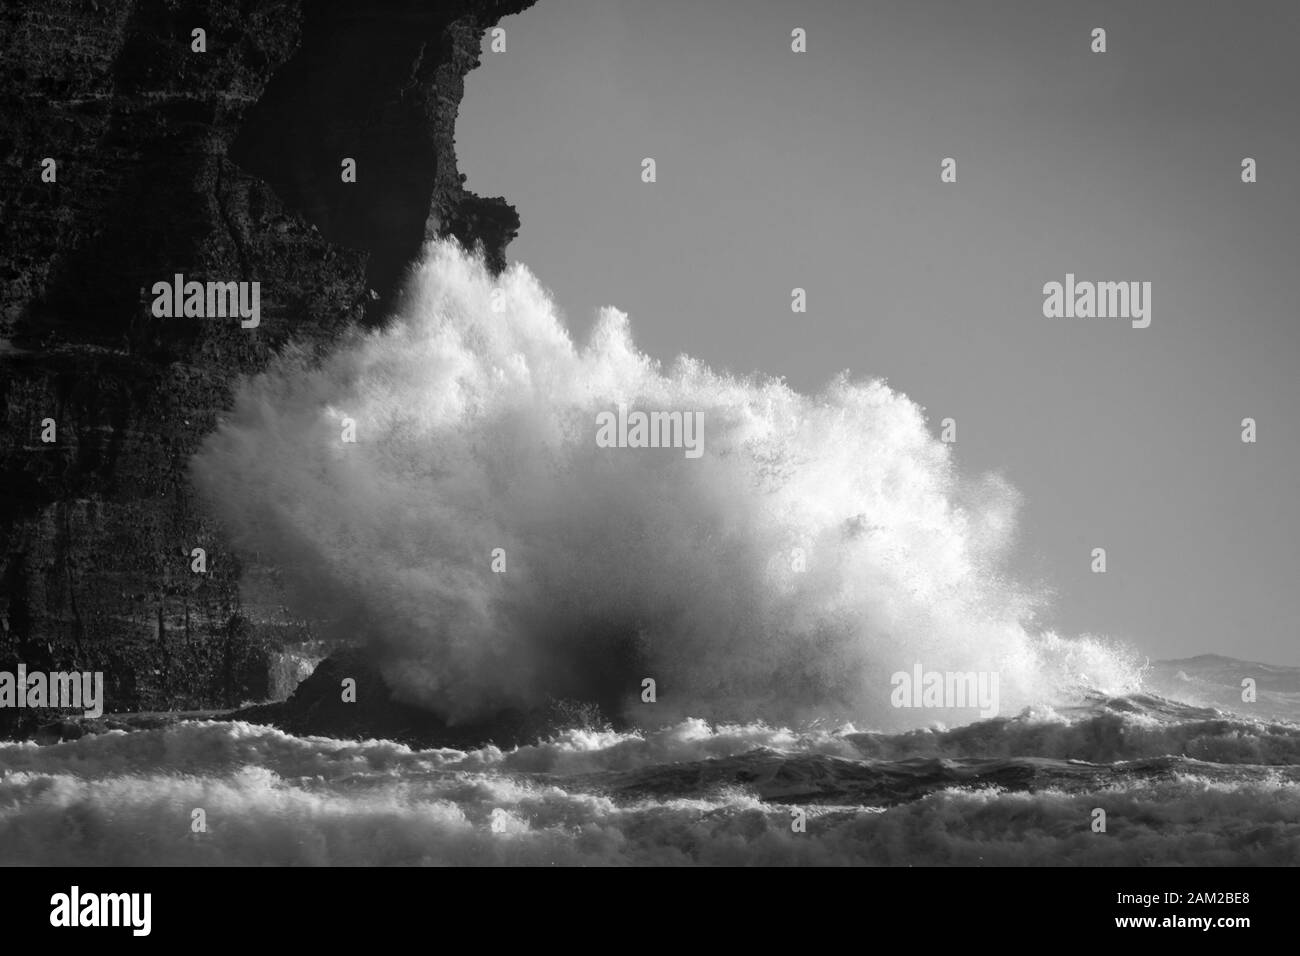 Immagine bianca nera di grandi onde che si infrangono contro le rocce a Piha Beach, Waitakere, Nuova Zelanda Foto Stock